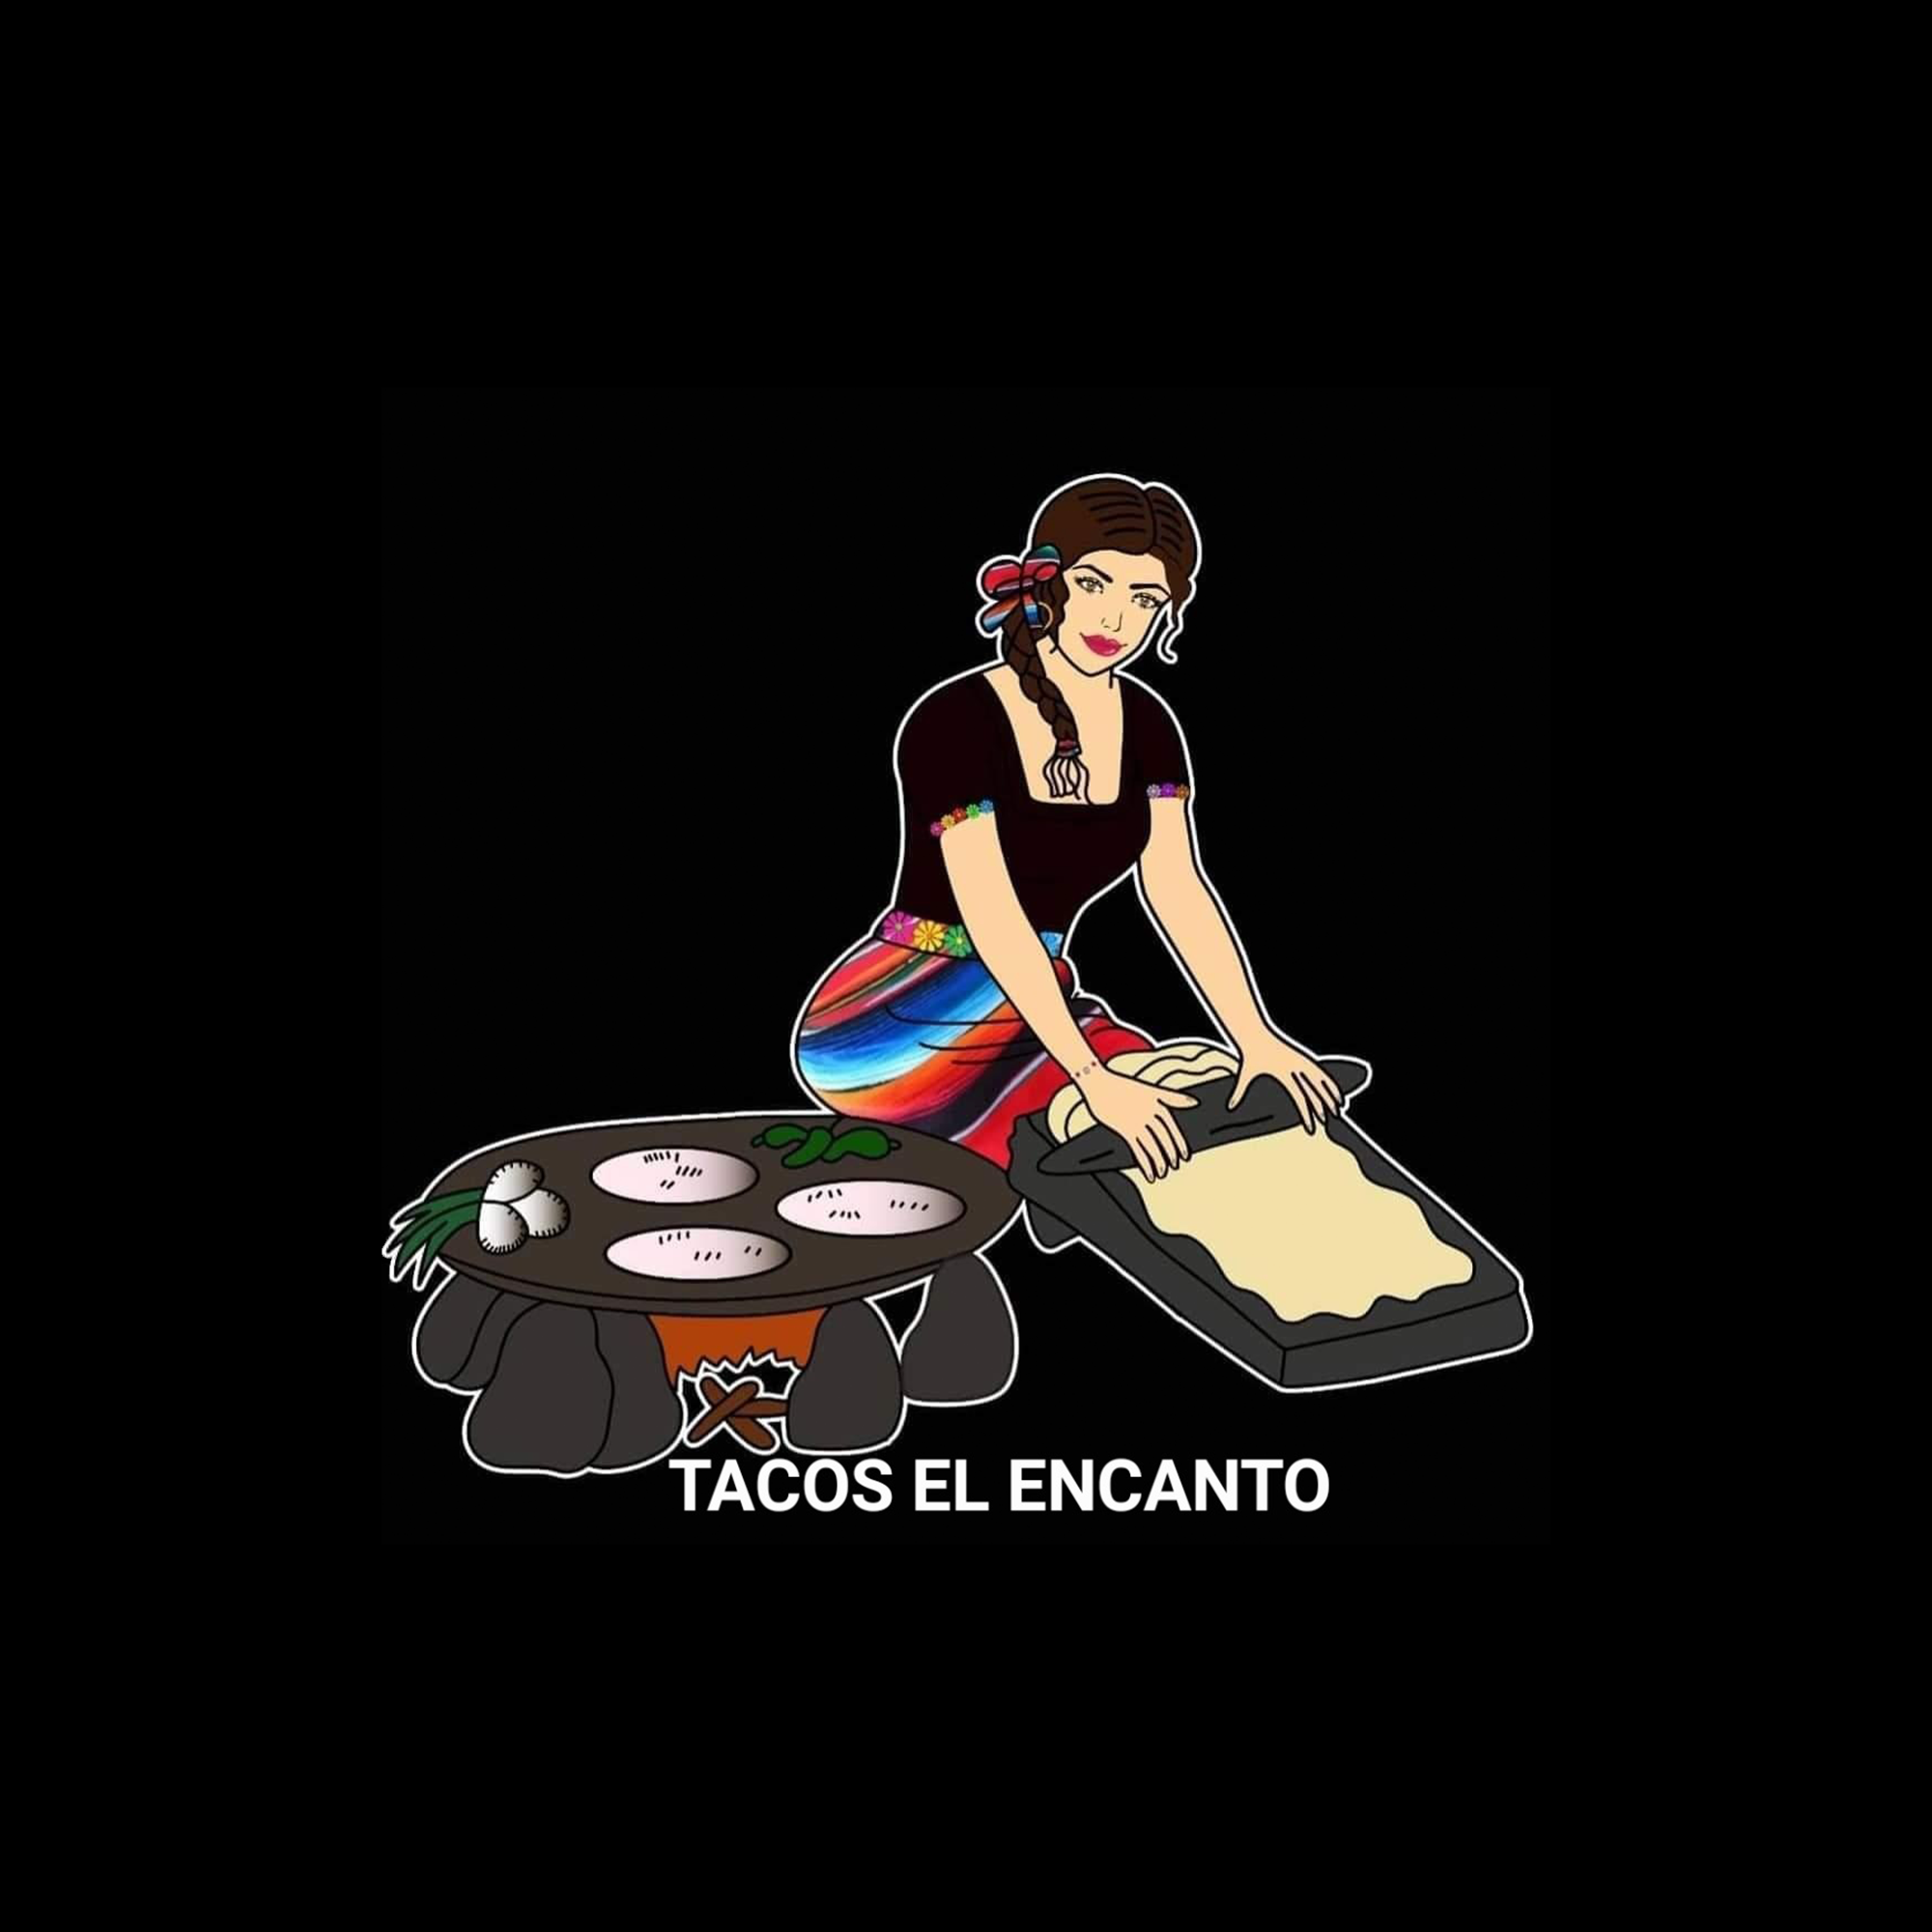 A photo of the Tacos El Encanto logo